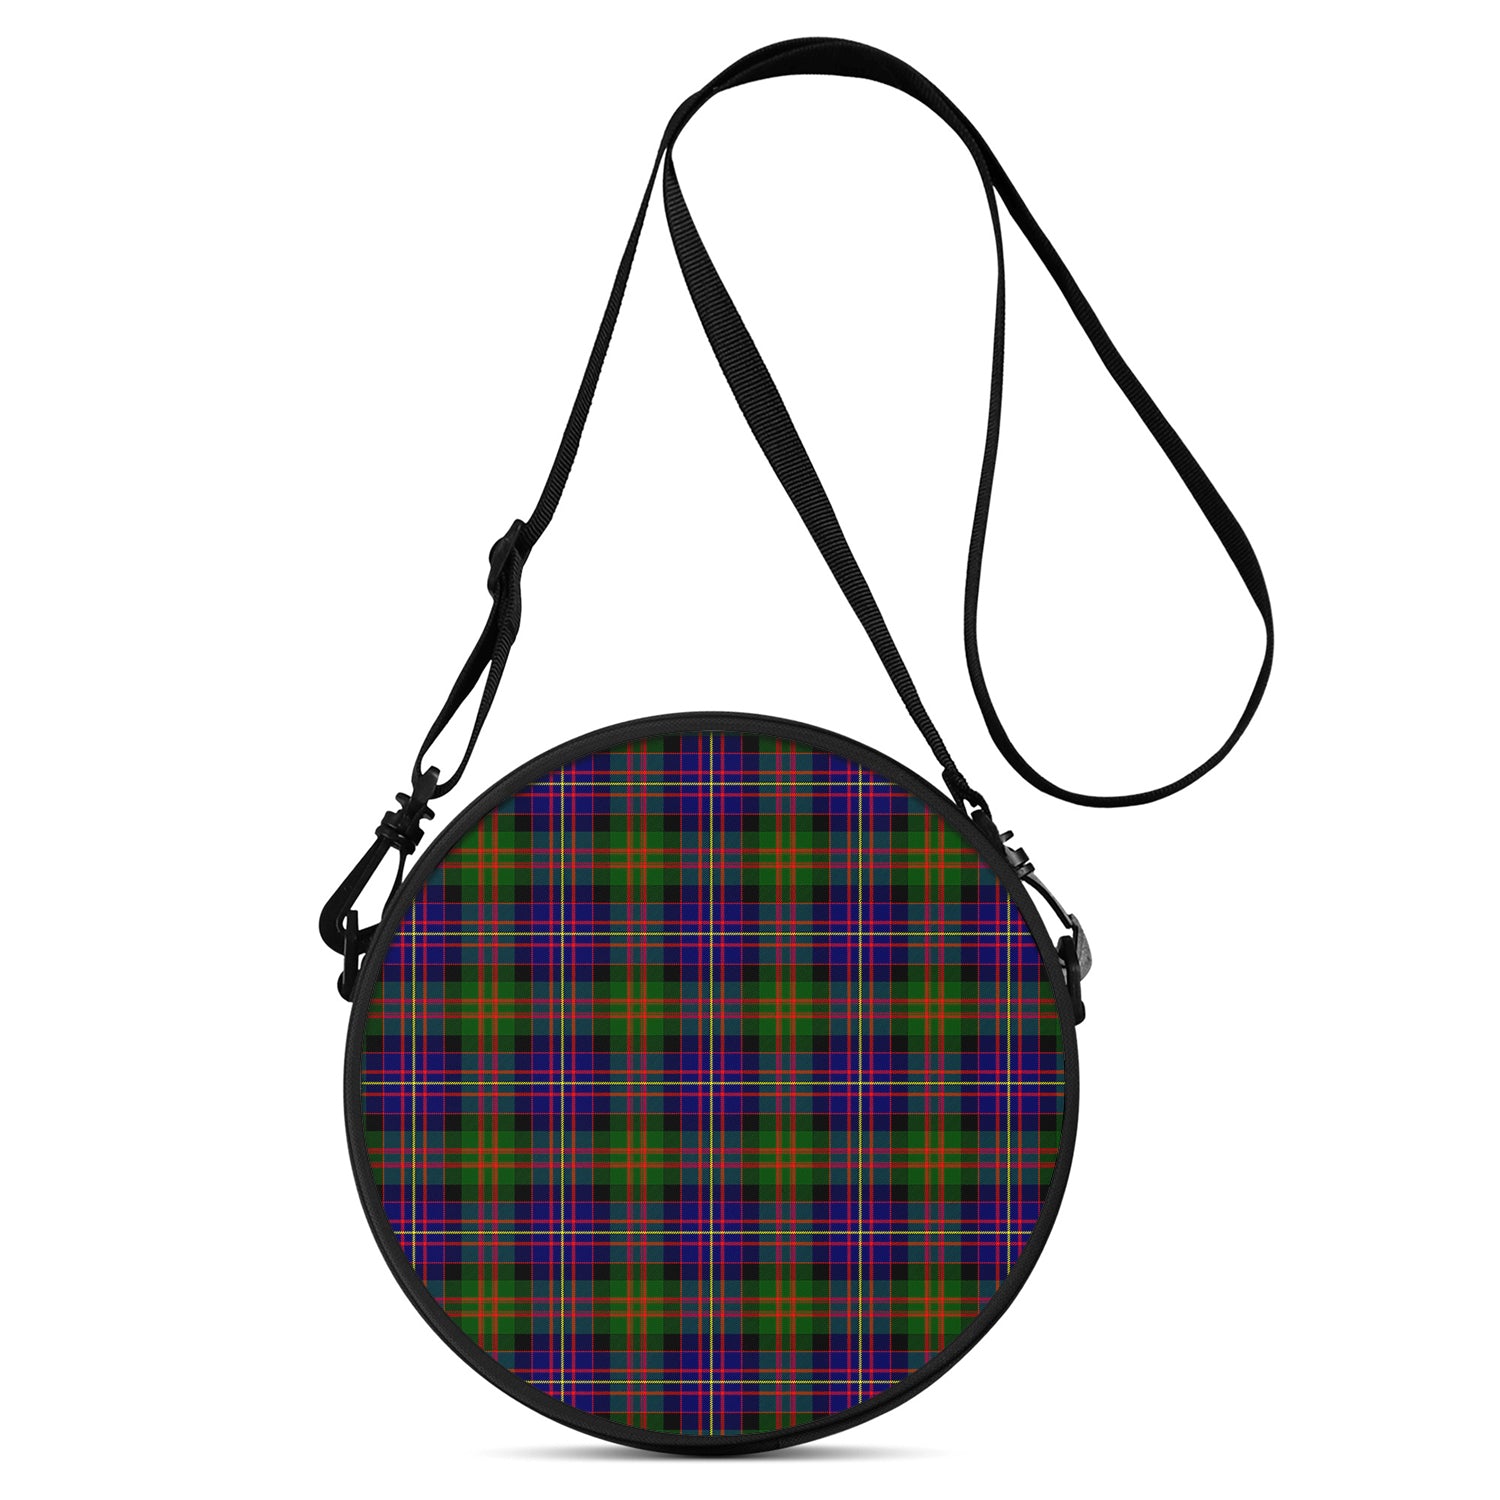 cameron-of-erracht-modern-tartan-round-satchel-bags